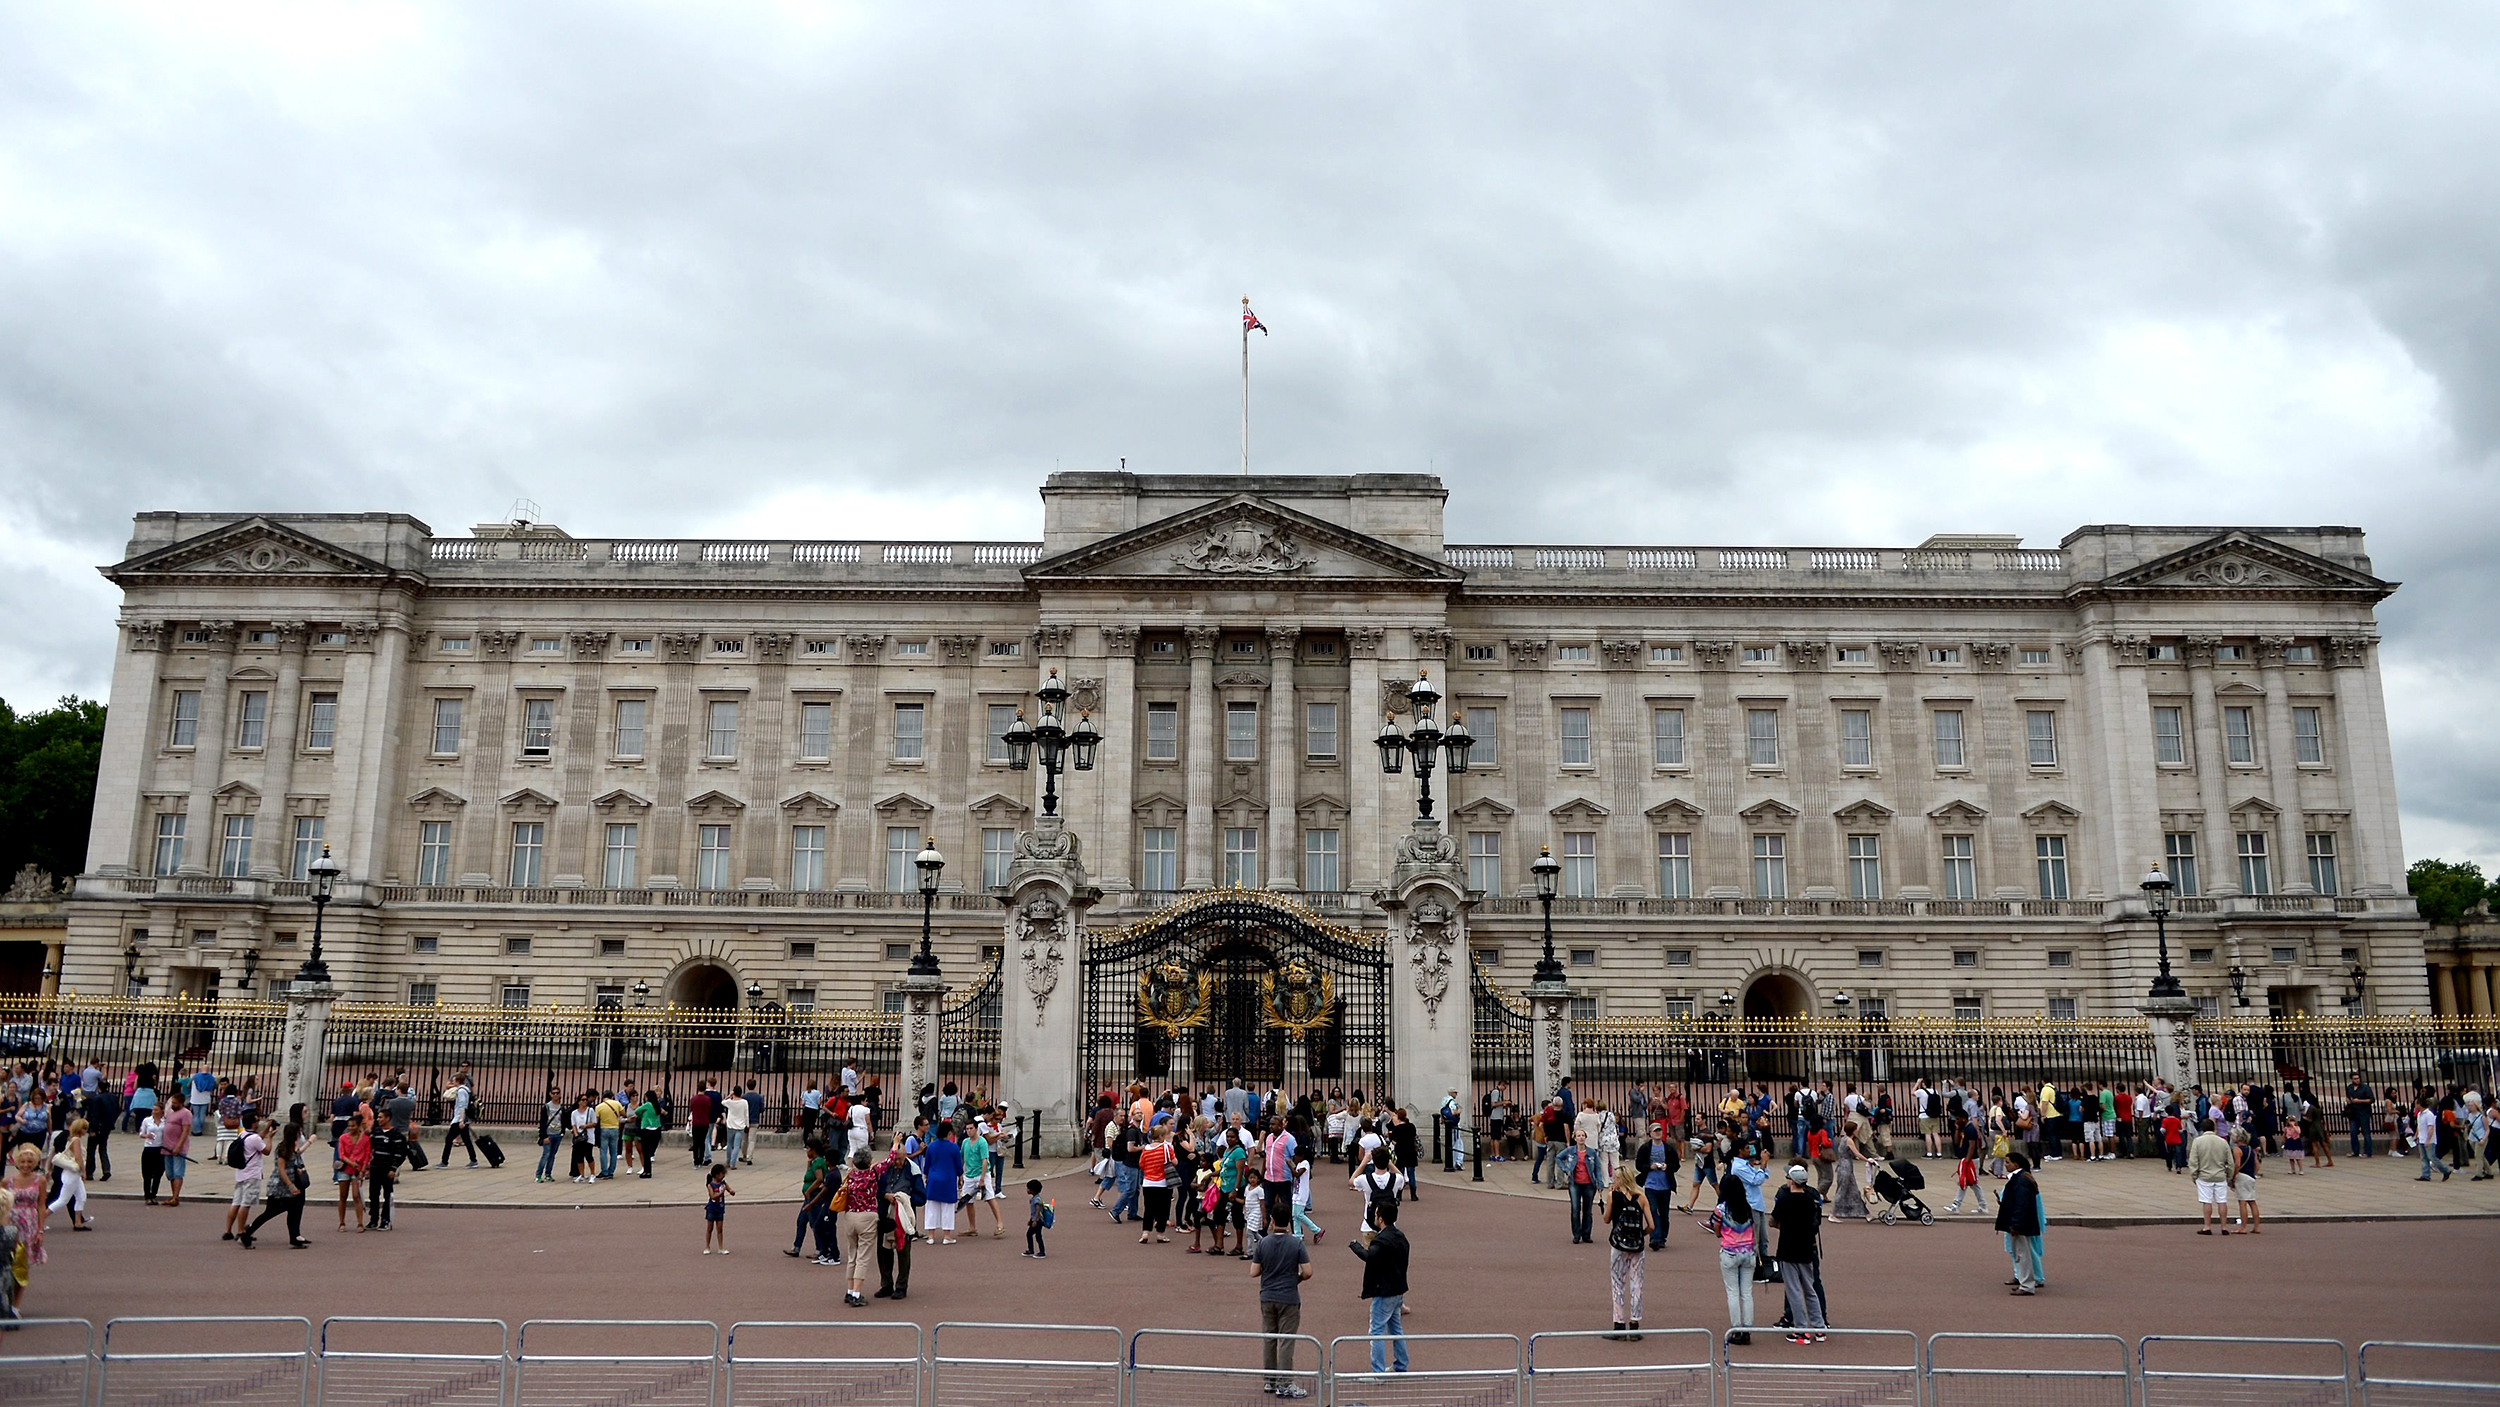 Buckingham Palace #25